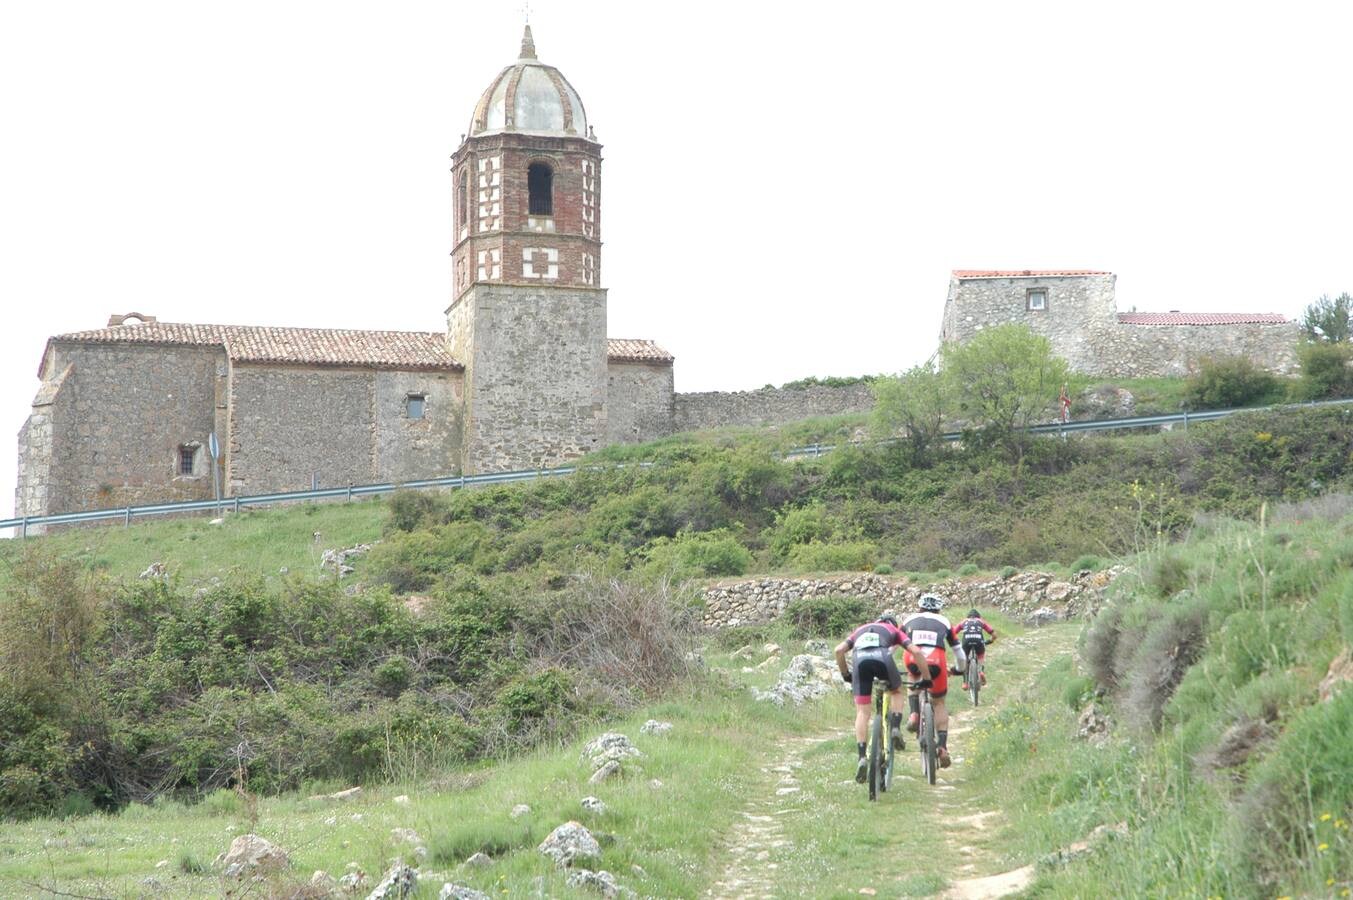 Salida y paso por Villarroya (zona de monte y pueblo) de la VII travesía Villa de Autol disputada el domingo, dentro del I Open XCM La Rioja